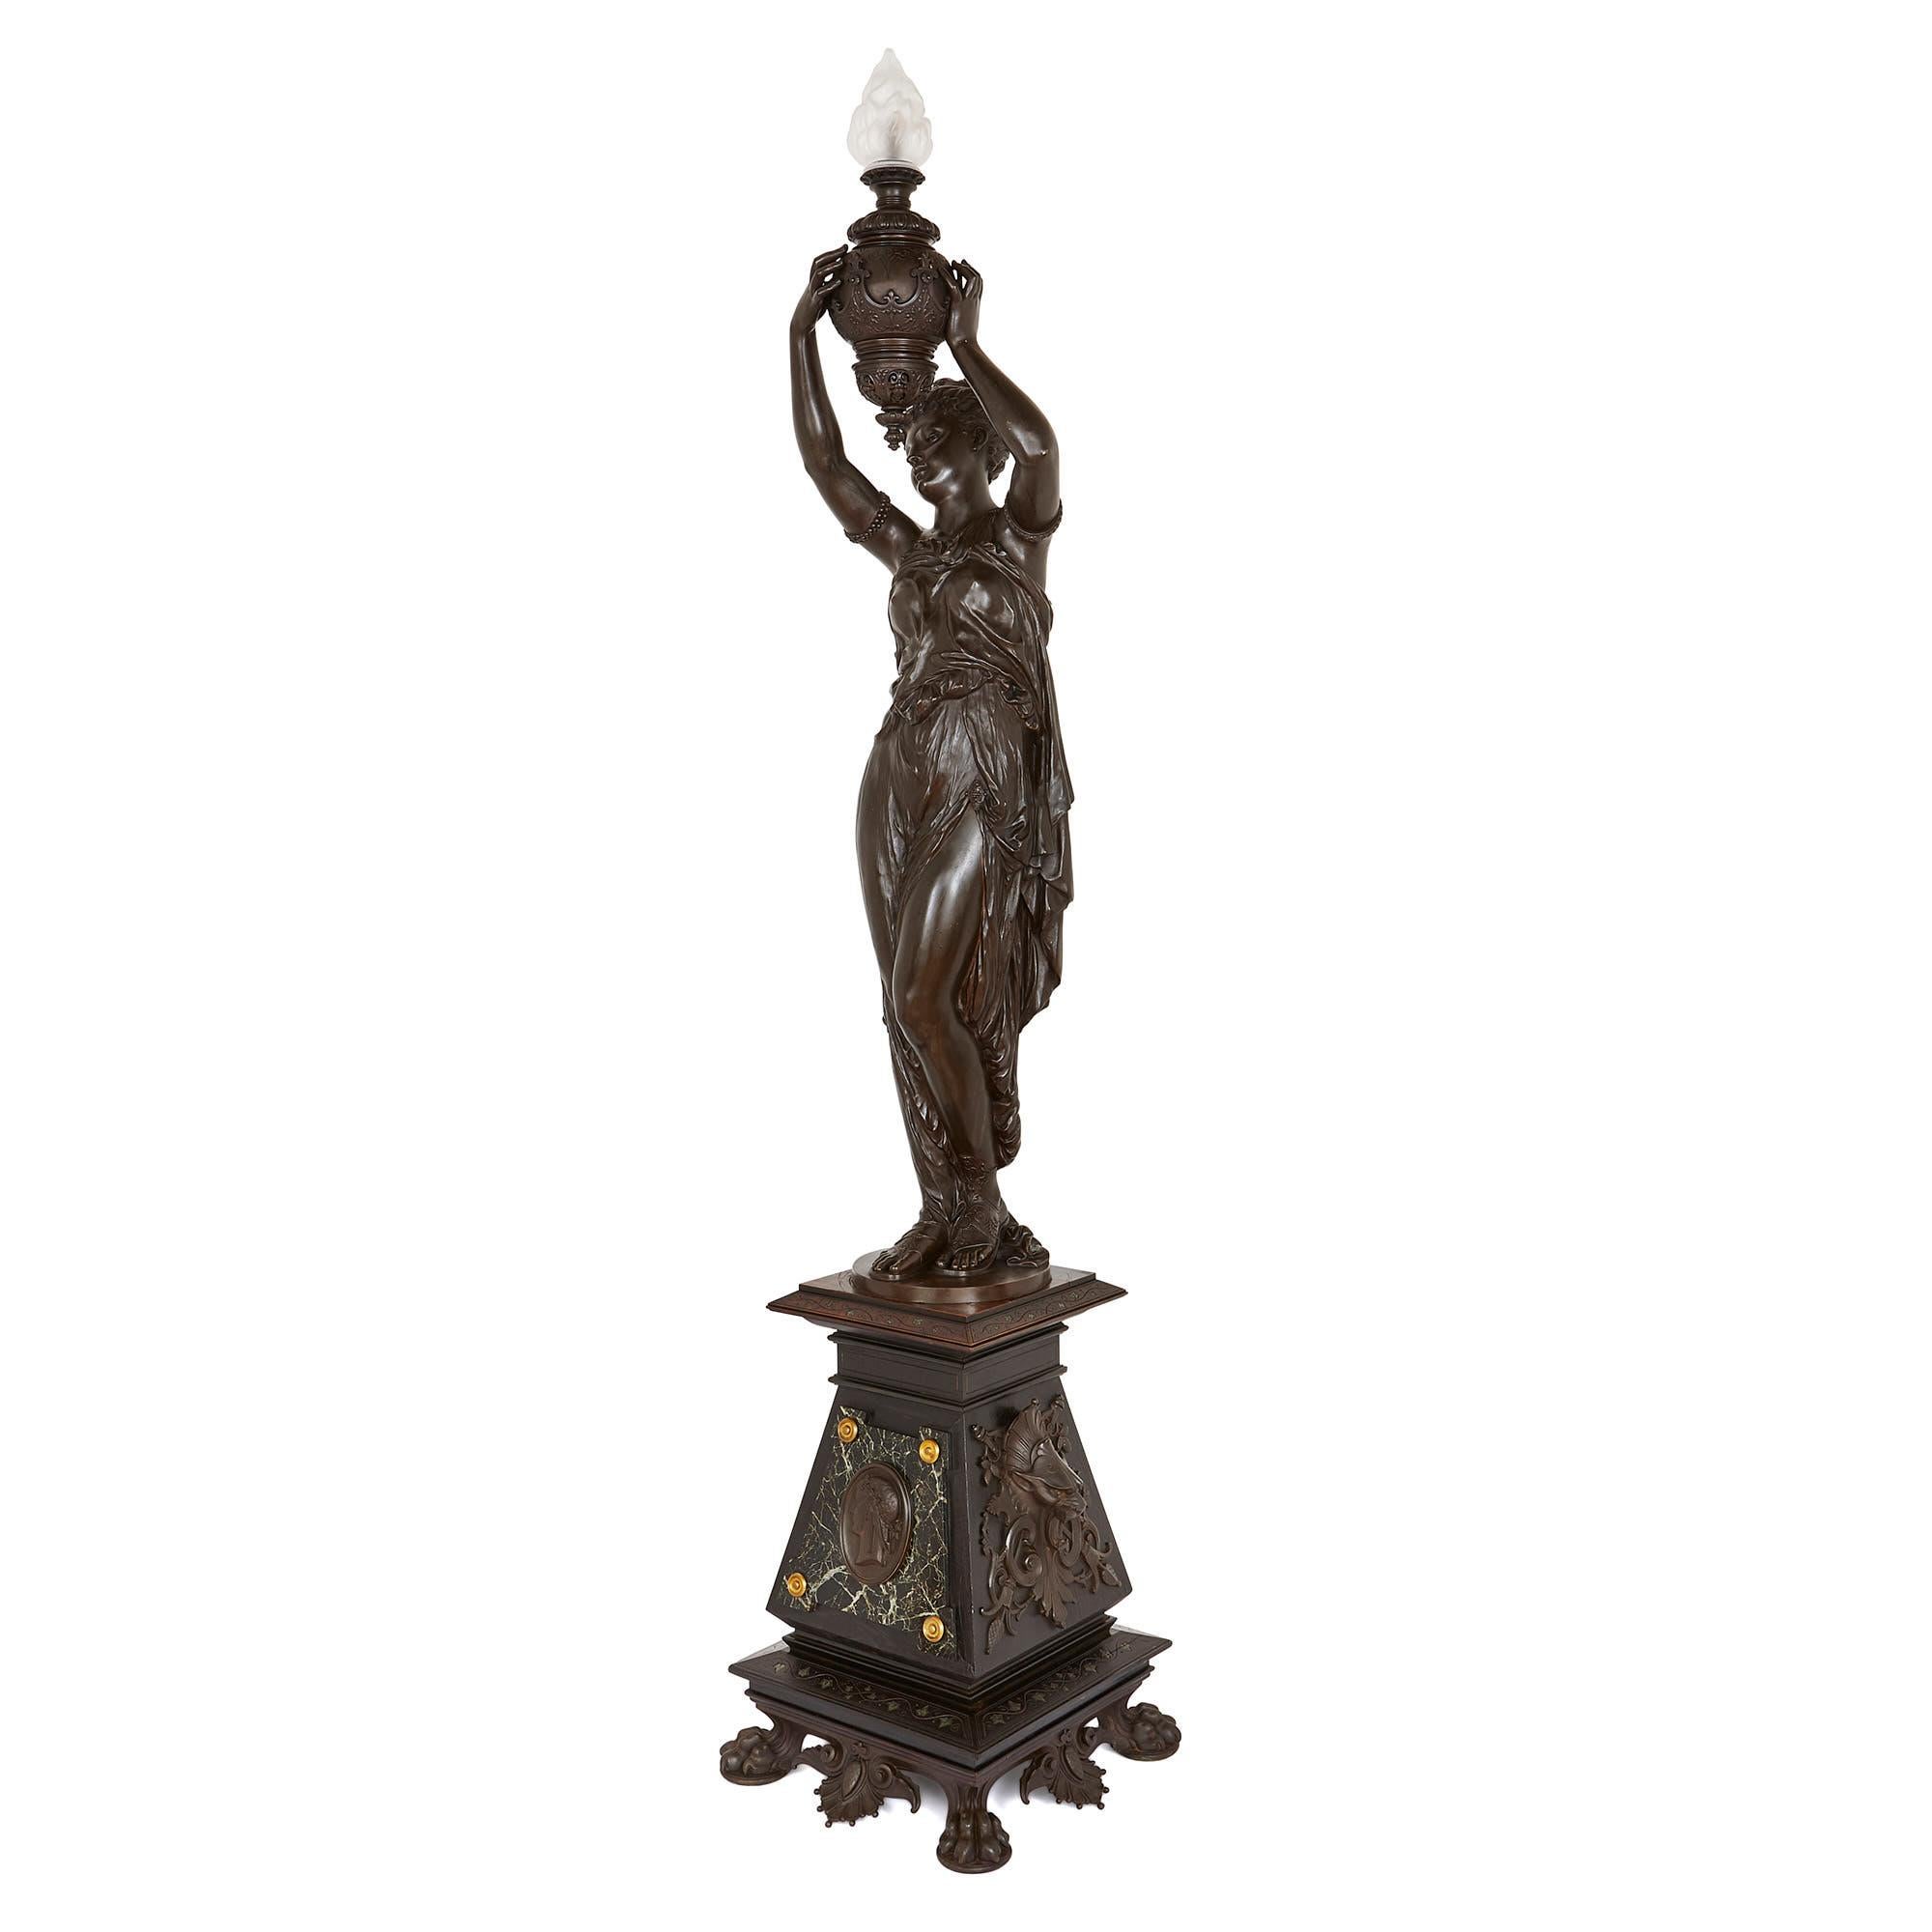 Cette belle pièce se compose d'une figure féminine en bronze patiné tenant une urne avec une flamme en verre, qui sert de lampe, le tout reposant sur un haut socle en bois finement décoré. 

Le socle est fabriqué en bois ébonisé et repose sur une